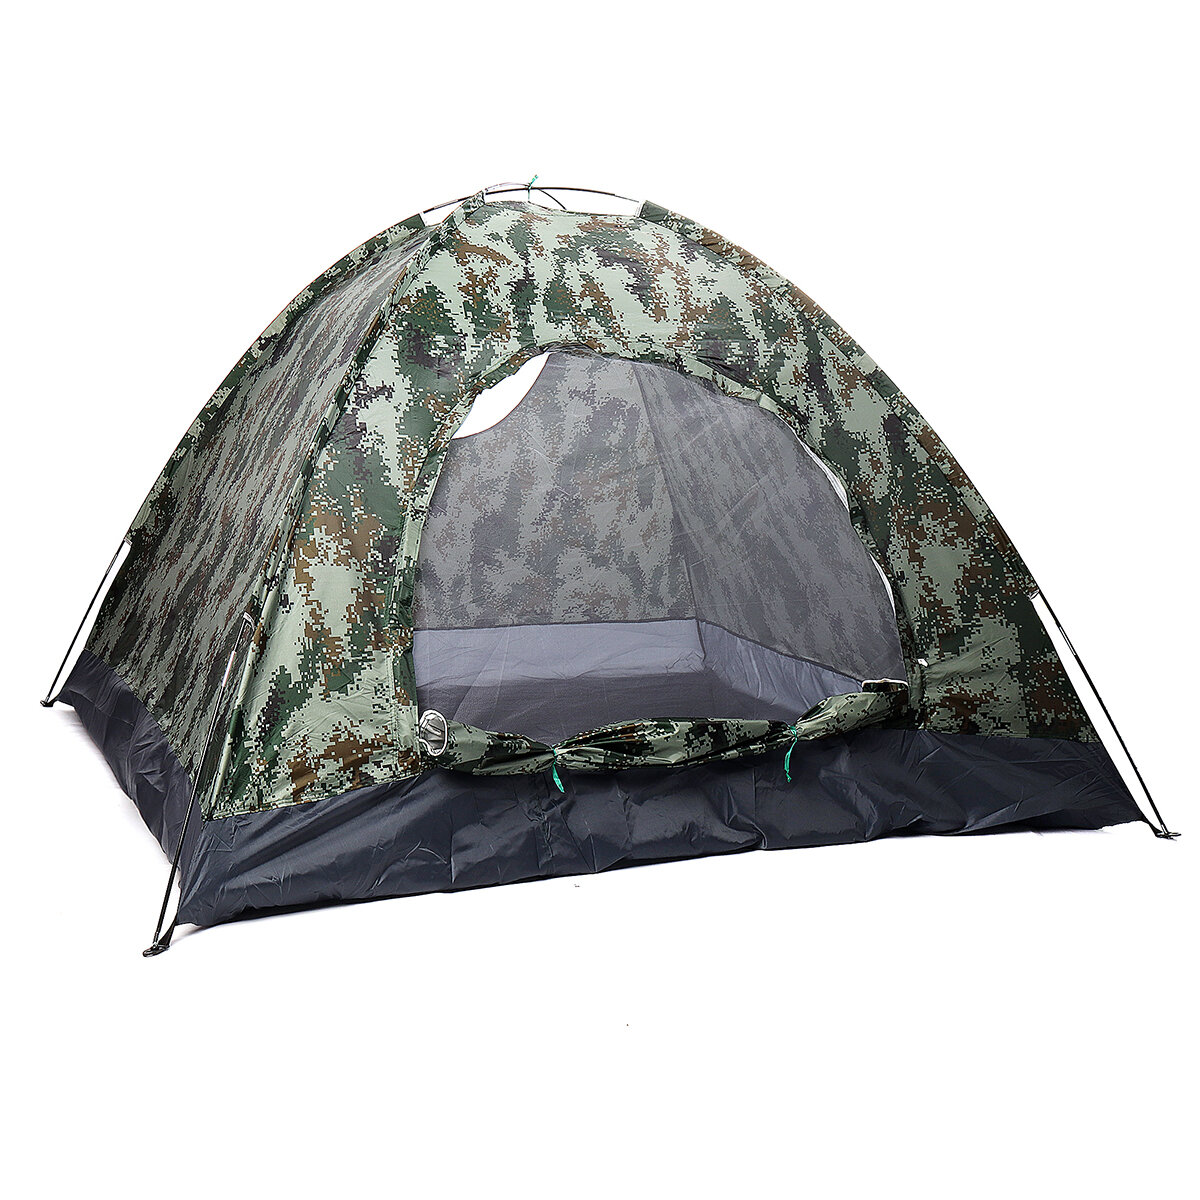 Tente imperméable pour 3-4 personnes avec porte ronde pour le camping et la randonnée, fournitures de sommeil en plein air.